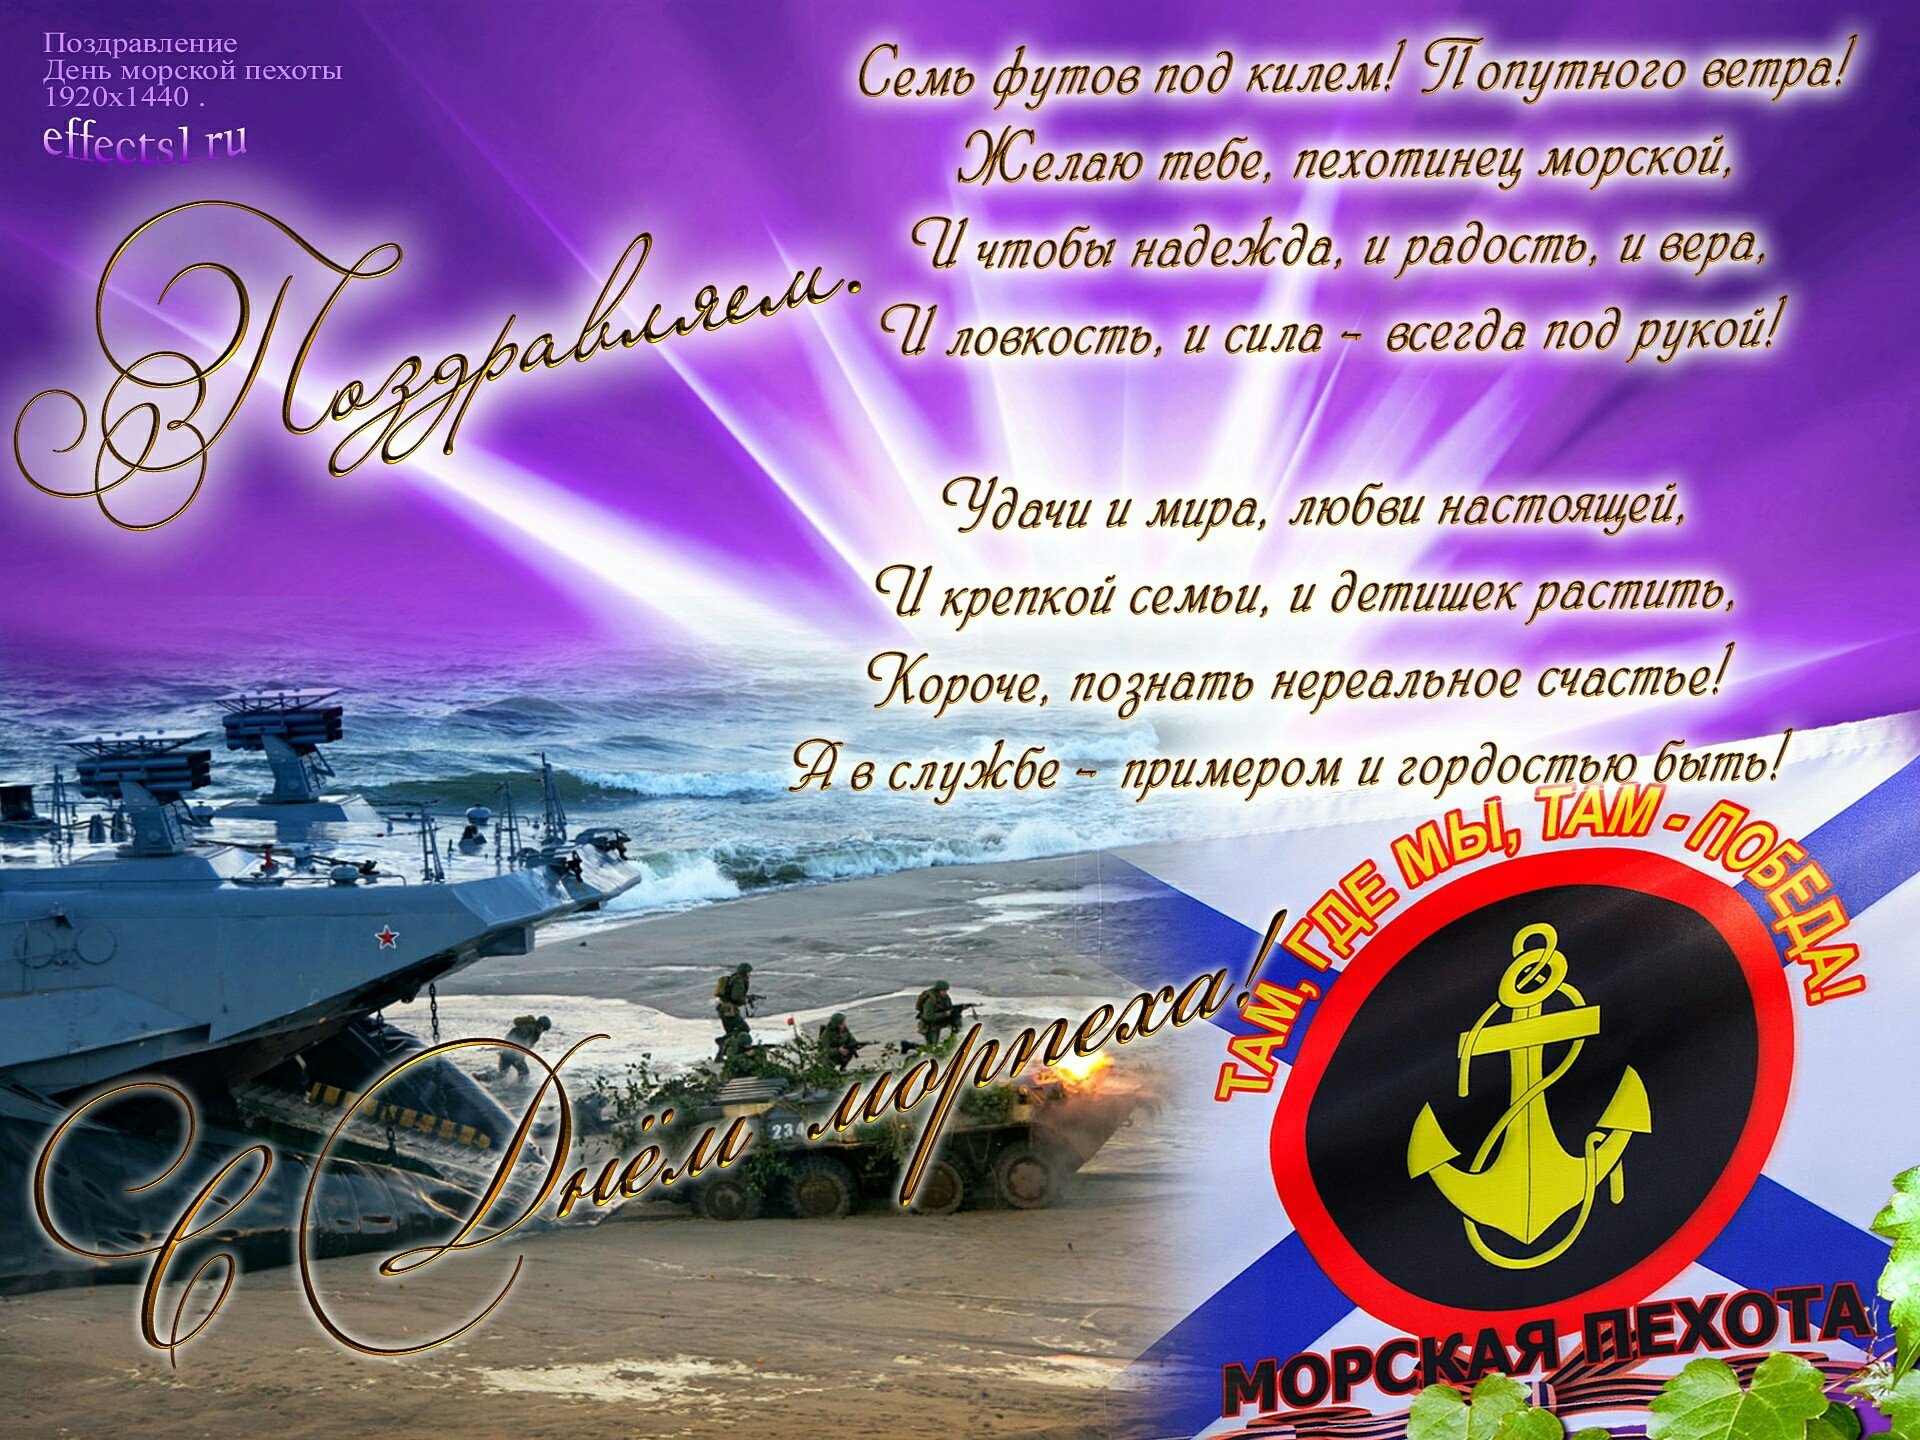 Морское день рождение поздравление. День морской пехоты. С днём морской пехоты поздравление. Открытки с днём морской пехоты. Поздравление с днем морпеха.